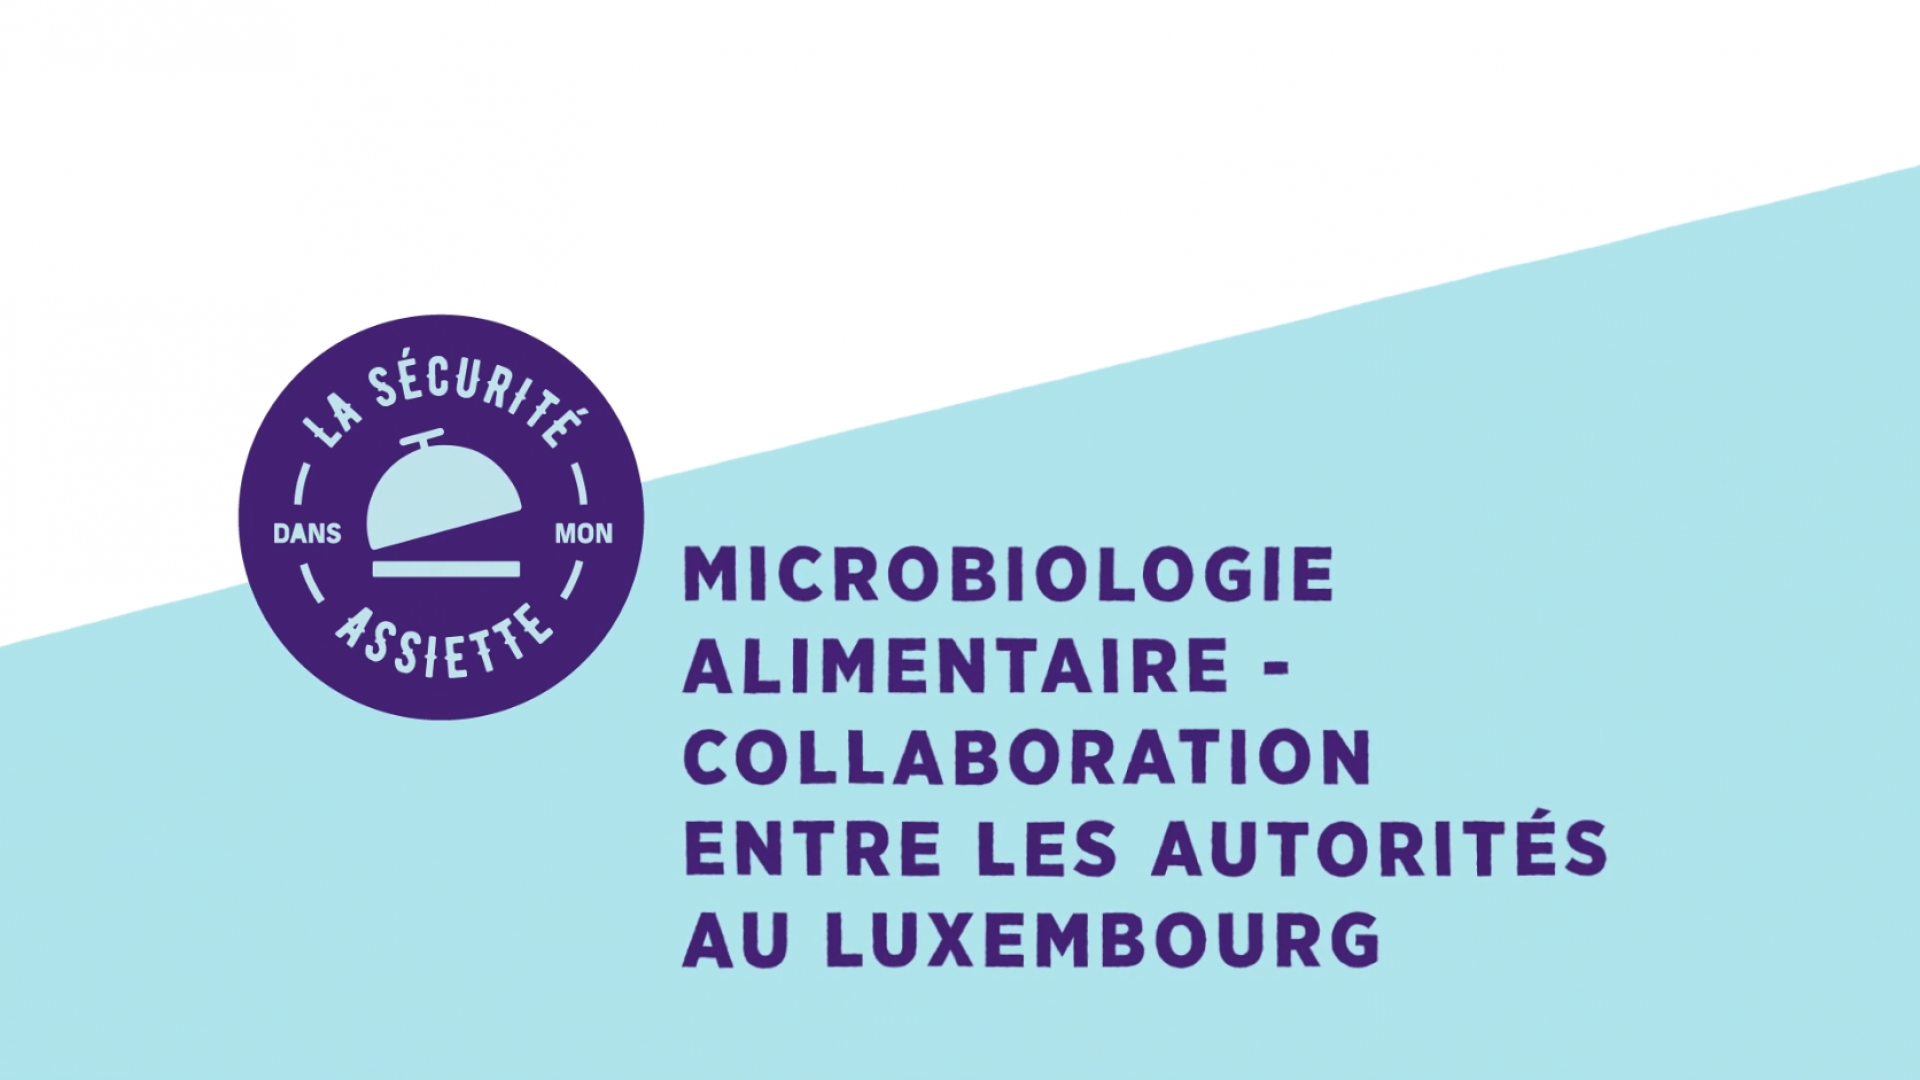 Microbiologie alimentaire - Collaboration entre les autorités au Luxembourg (sous-titres UK)